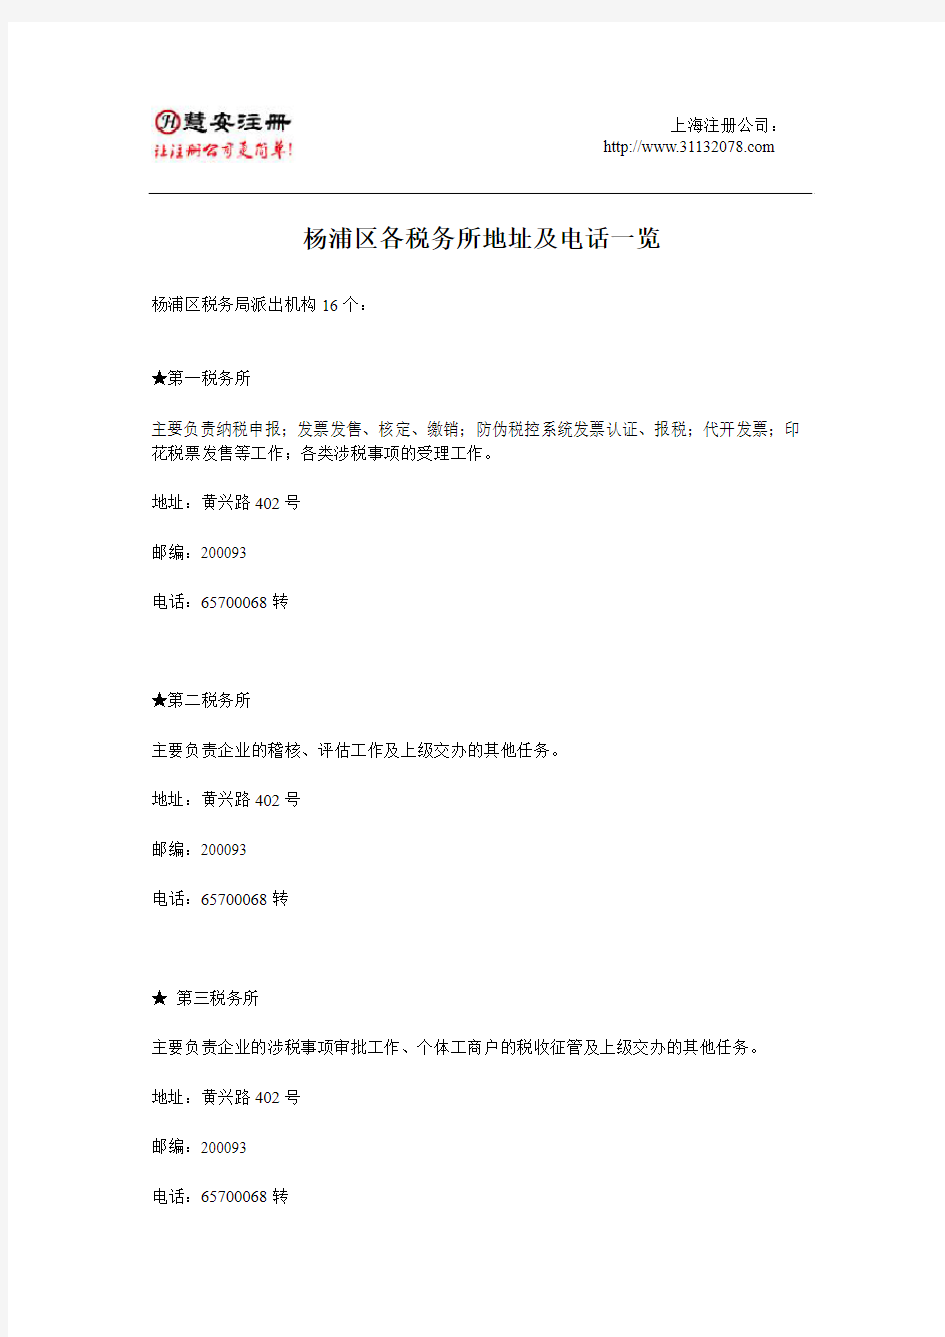 杨浦区各税务所电话及地址一览